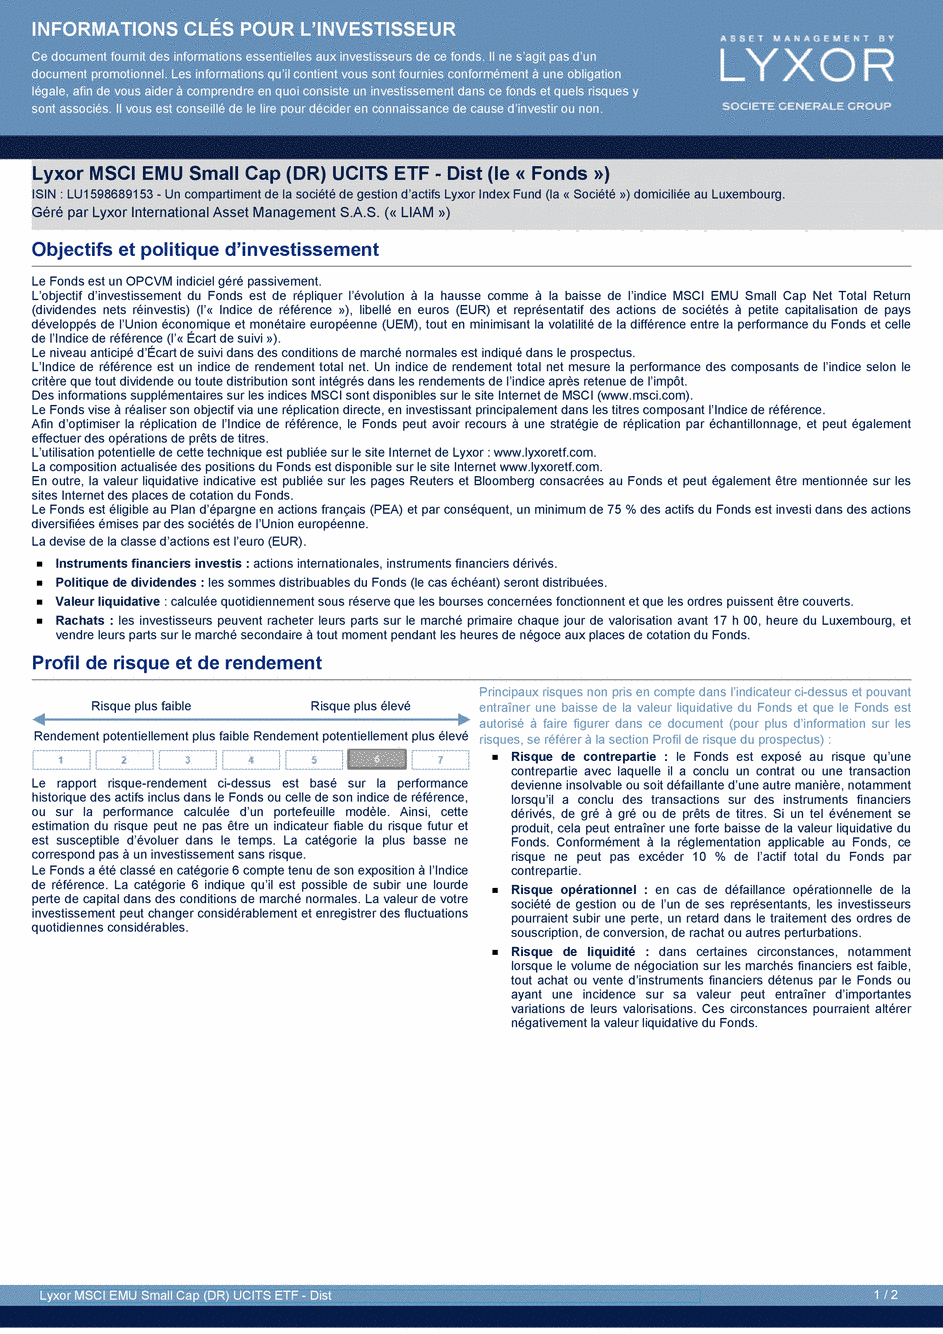 DICI Lyxor MSCI EMU Small Cap (DR) UCITS ETF - Dist - 19/02/2021 - Français